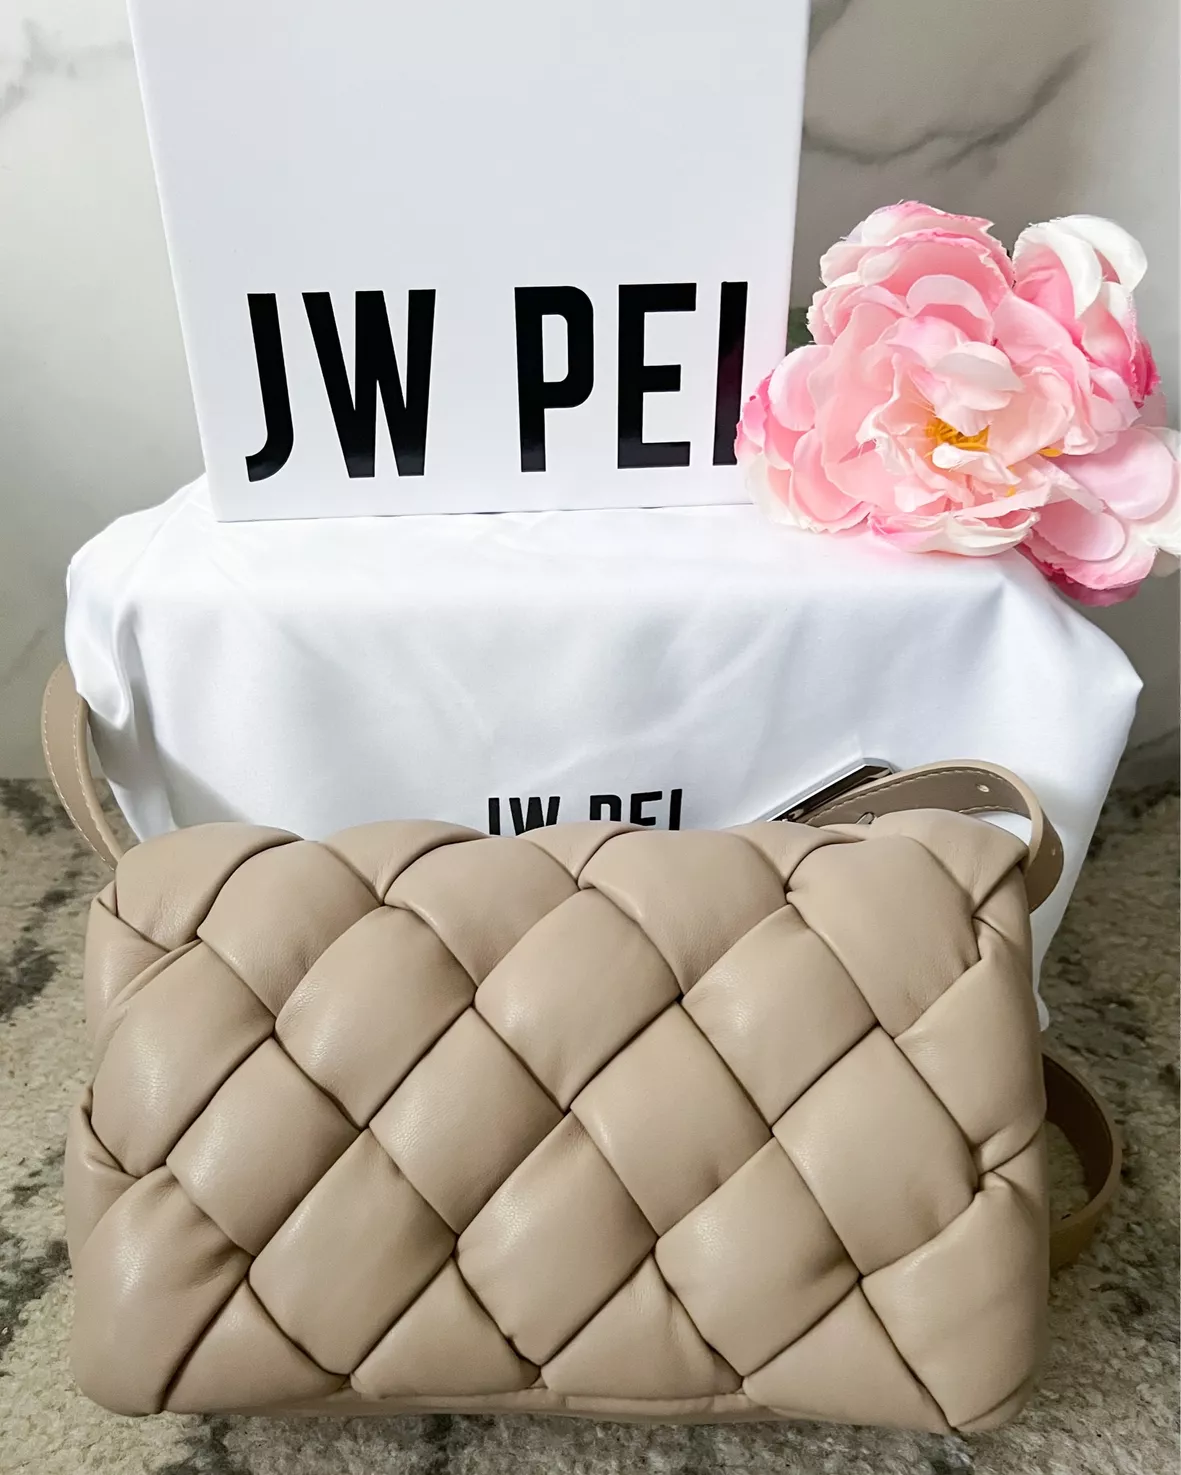 JW Pei Maze Bags Women's Crossbody